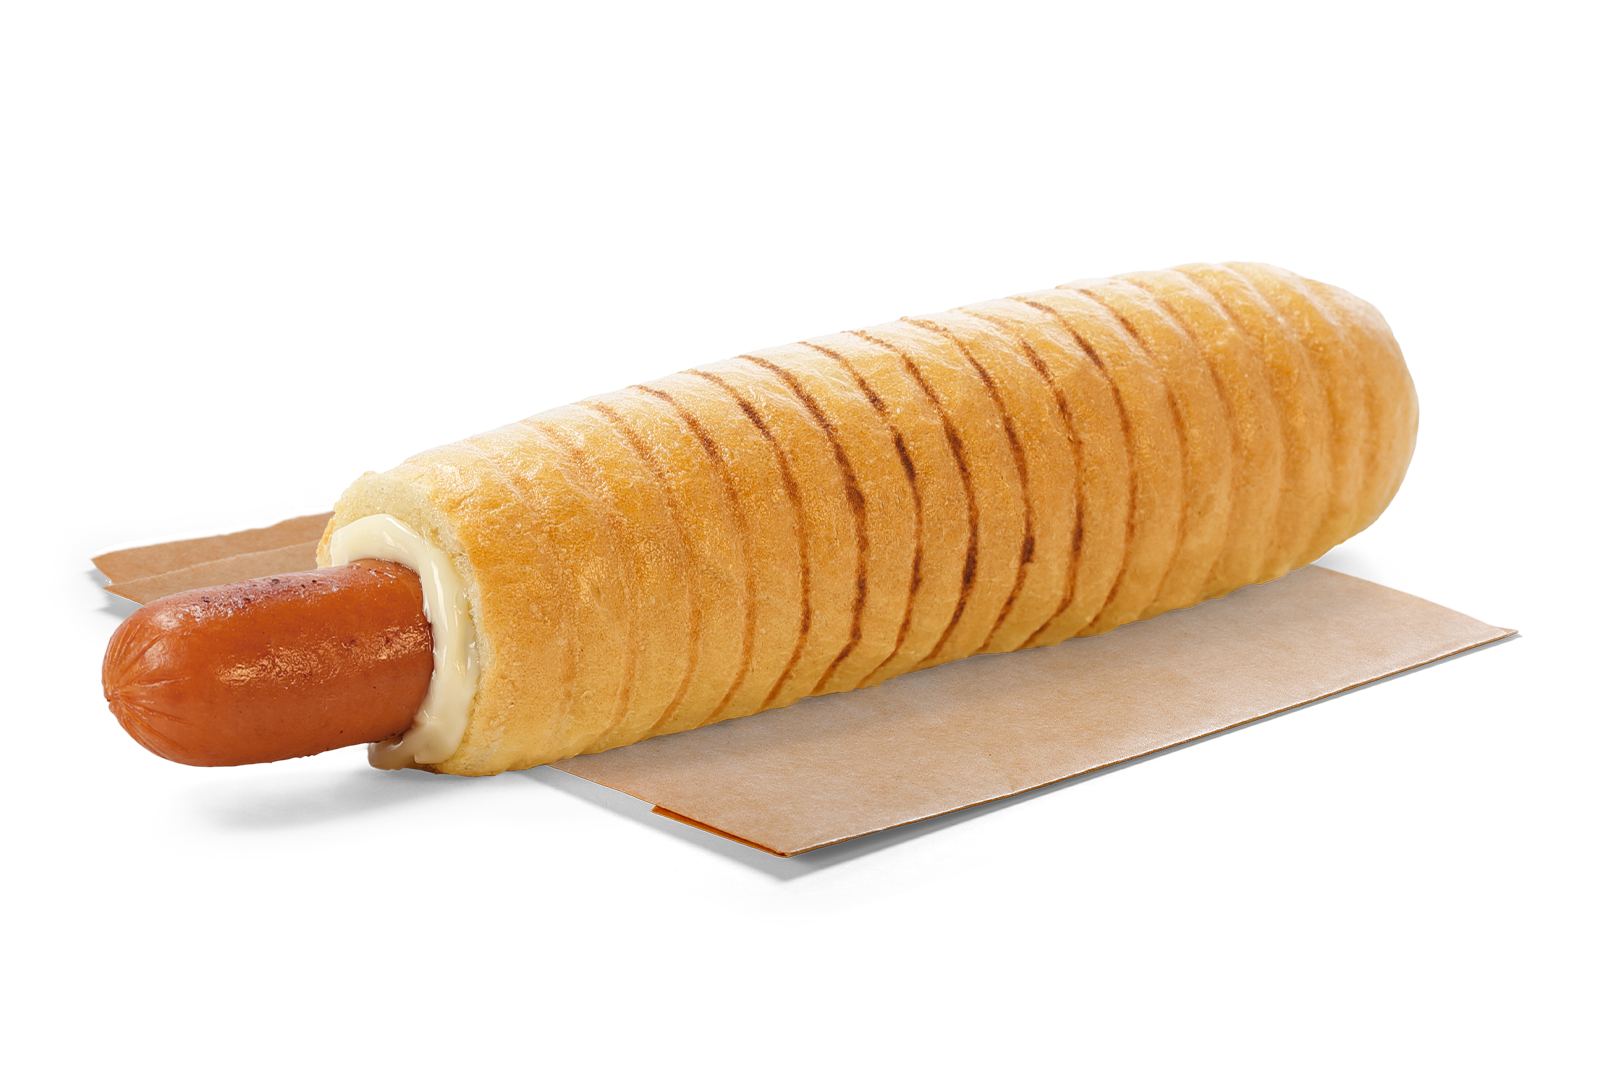 French hotdog